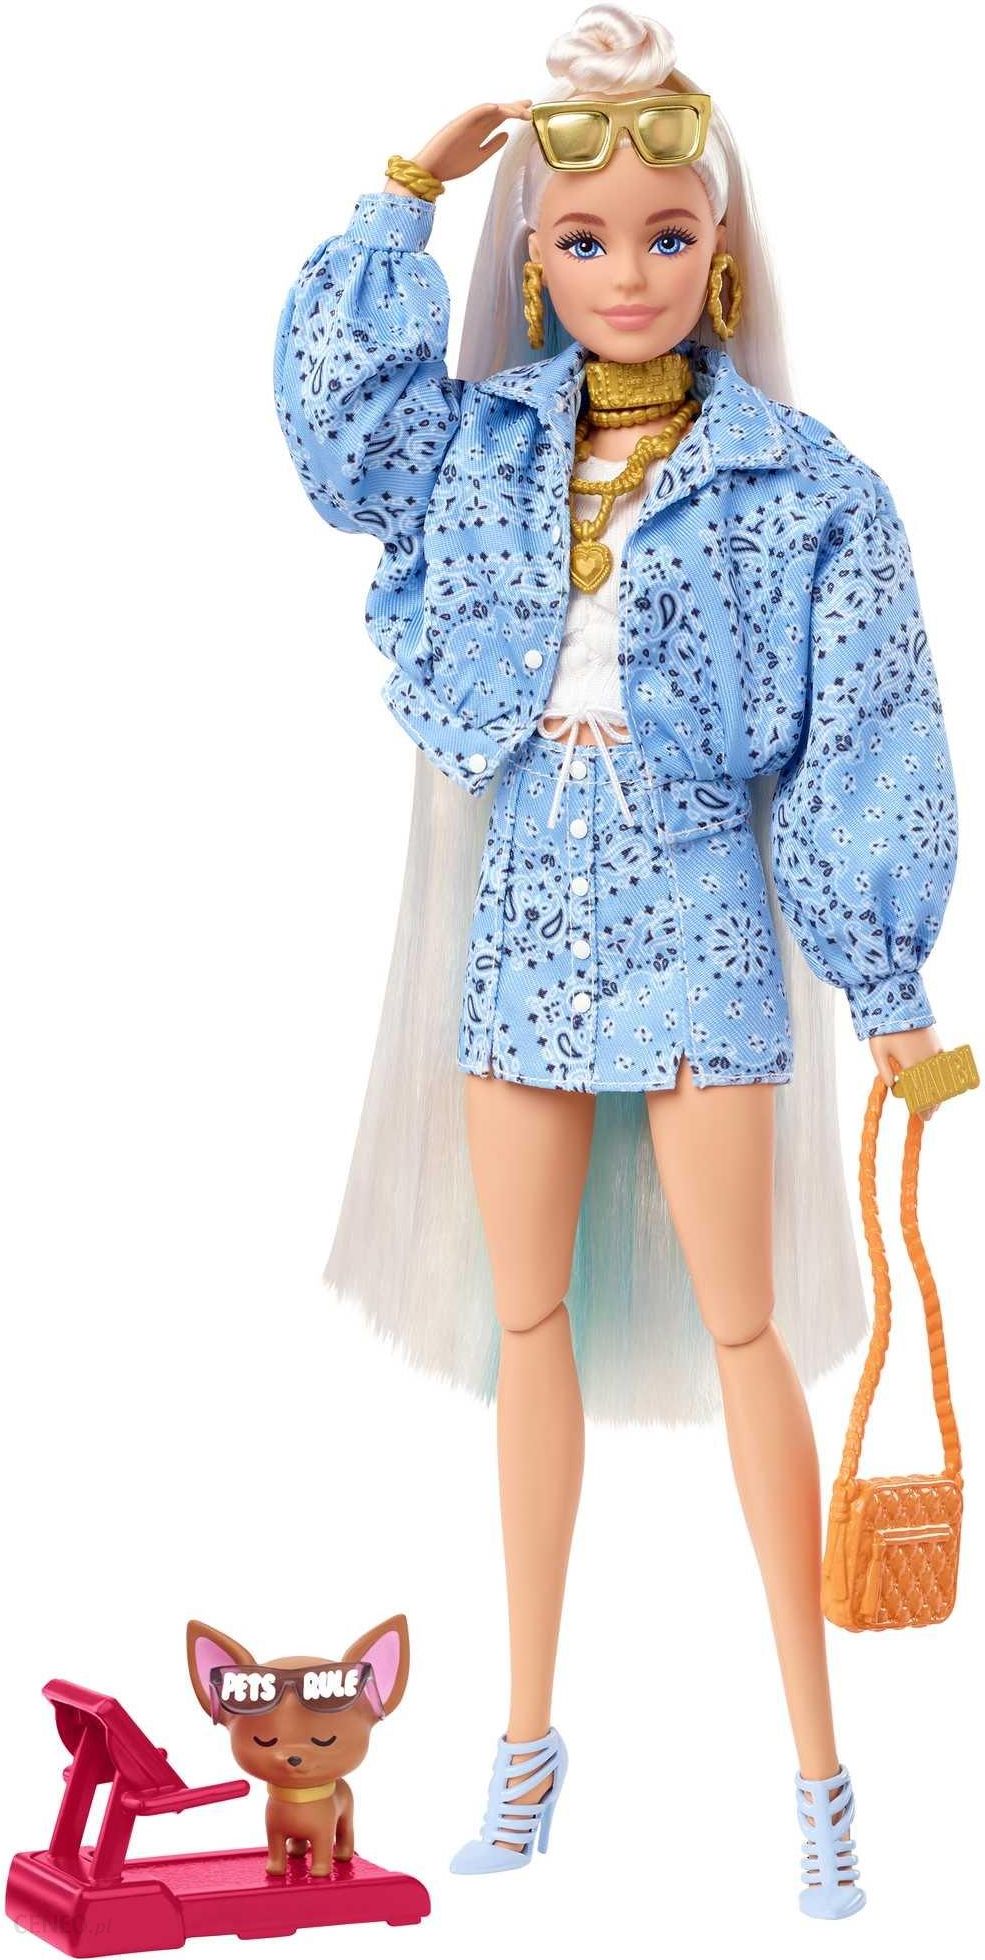 Barbie Extra Fashions HDJ39